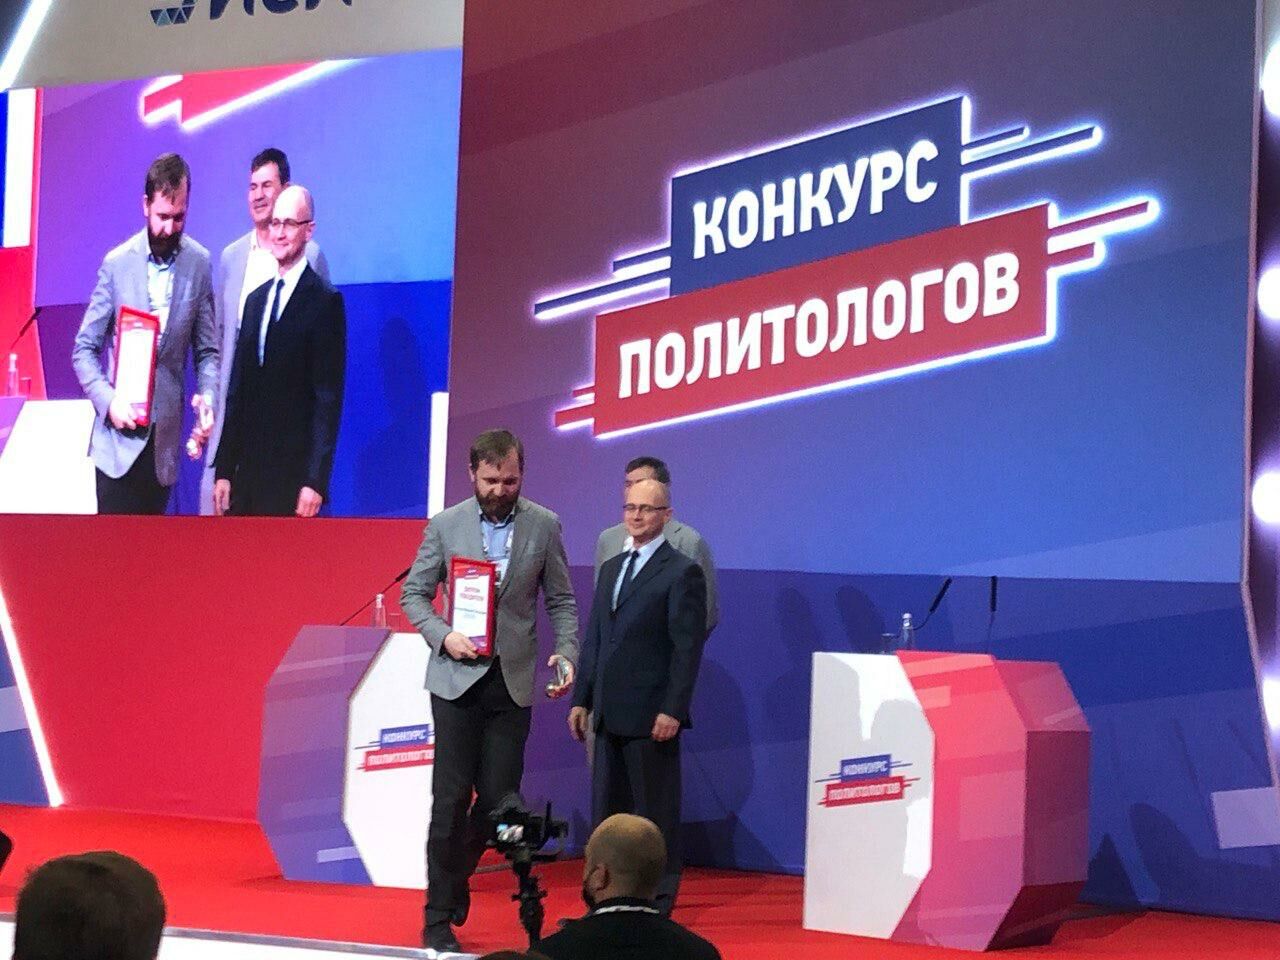 Владимир Кутилов из Татарстана выиграл во всероссийском конкурсе политологов